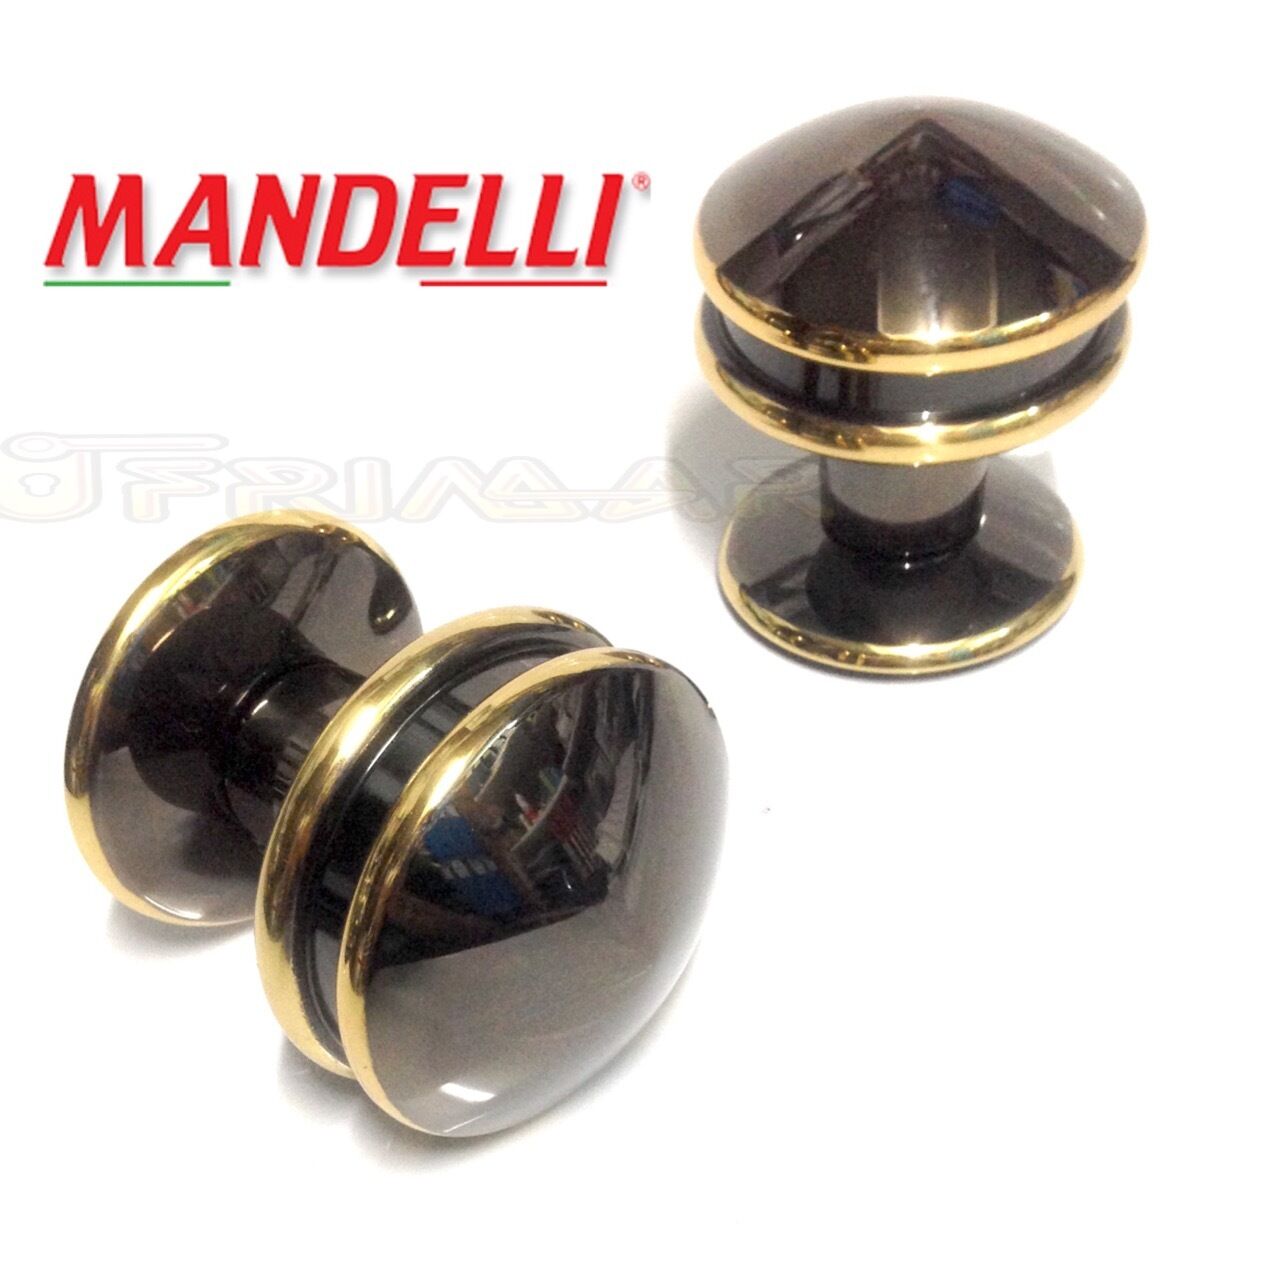 Pomolo per porta portone Mandelli Art.M24 Gold Black serie VINTAGE Made in Italy